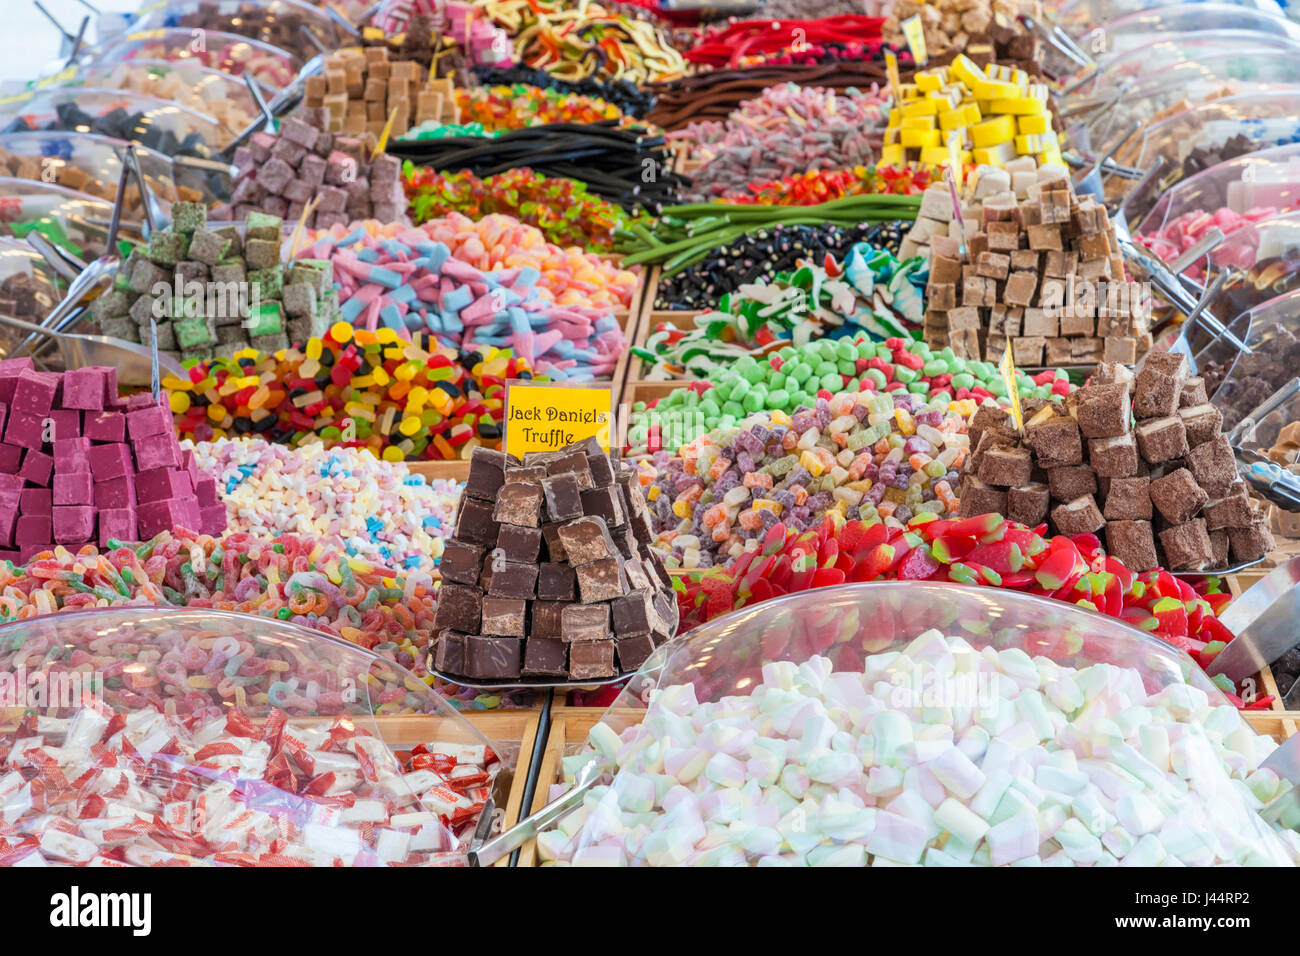 Pick and mix sweets, Nottingham, England, UK Stock Photo